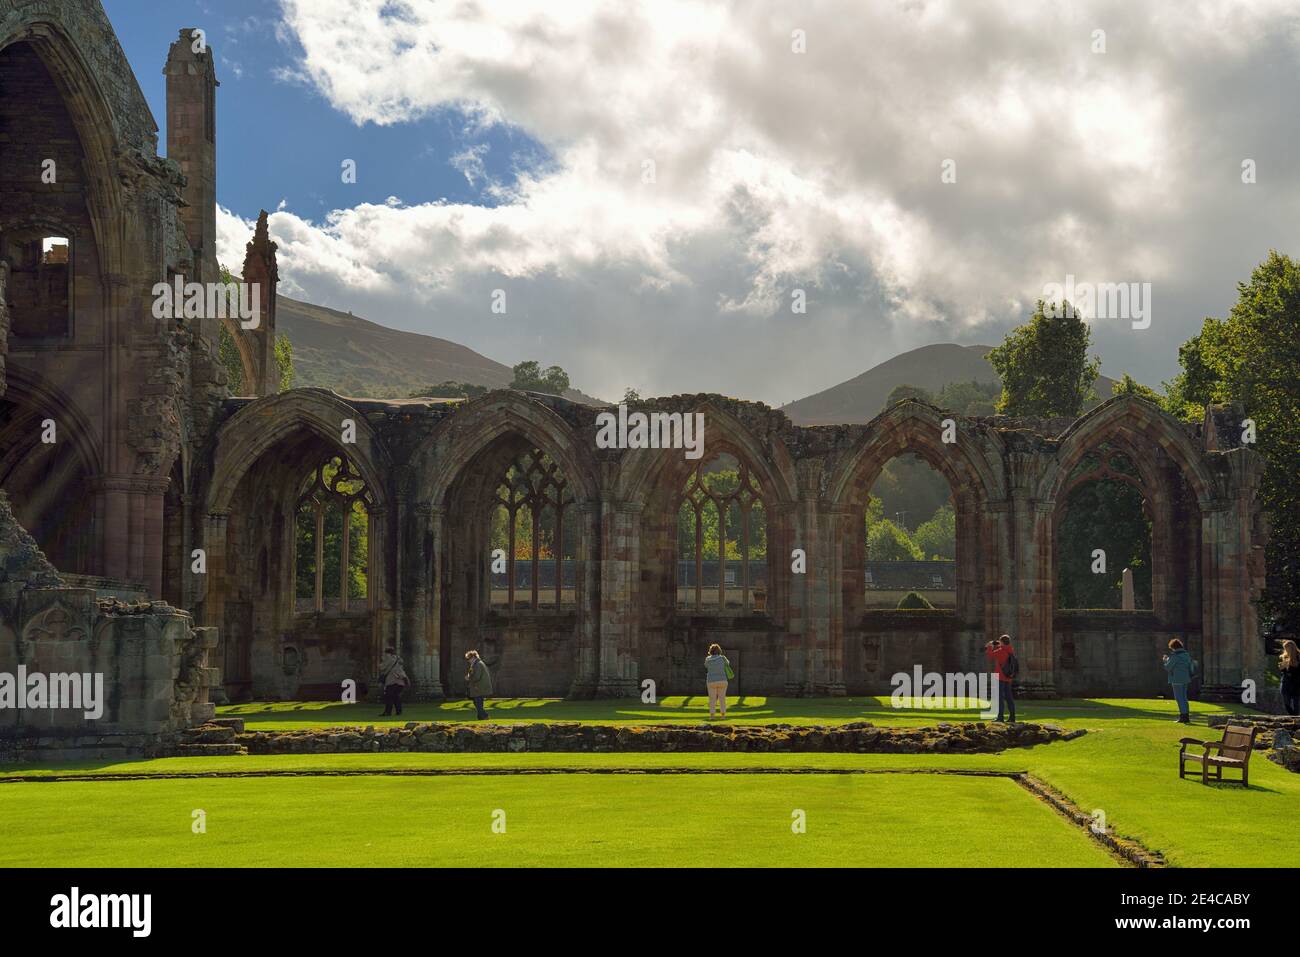 Ruines de la cathédrale d'Elgin, Moray, Écosse, Royaume-Uni, Europe, Elgin, Moray, Écosse, Royaume-Uni, îles britanniques Banque D'Images